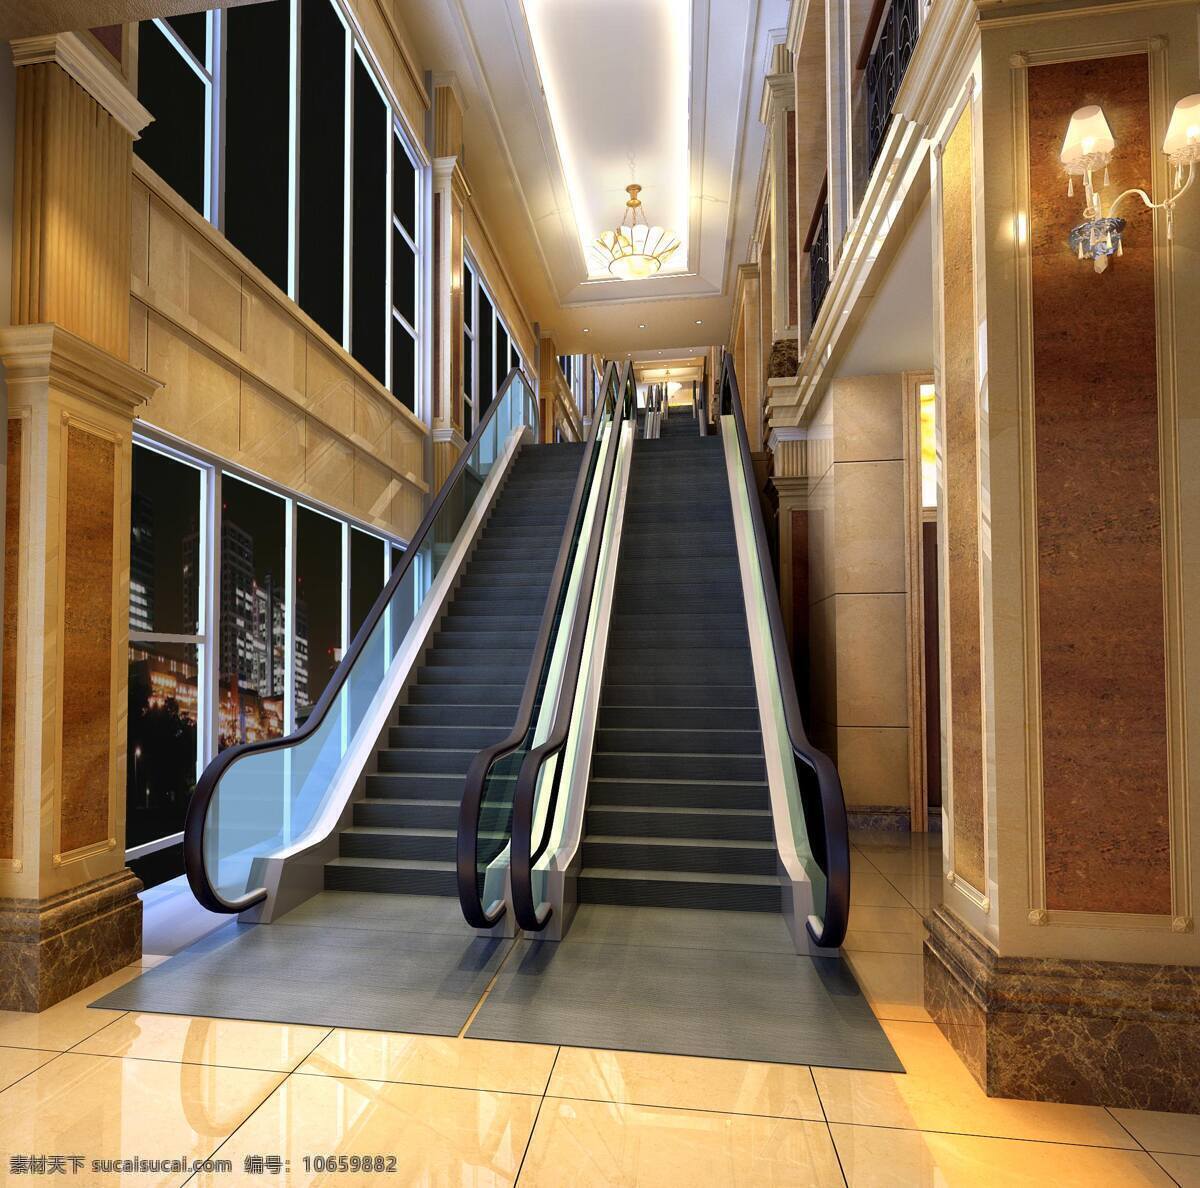 自动扶梯 贵宾厅 3d 效果图 室内图 装饰 设计模型 环境设计 室内设计